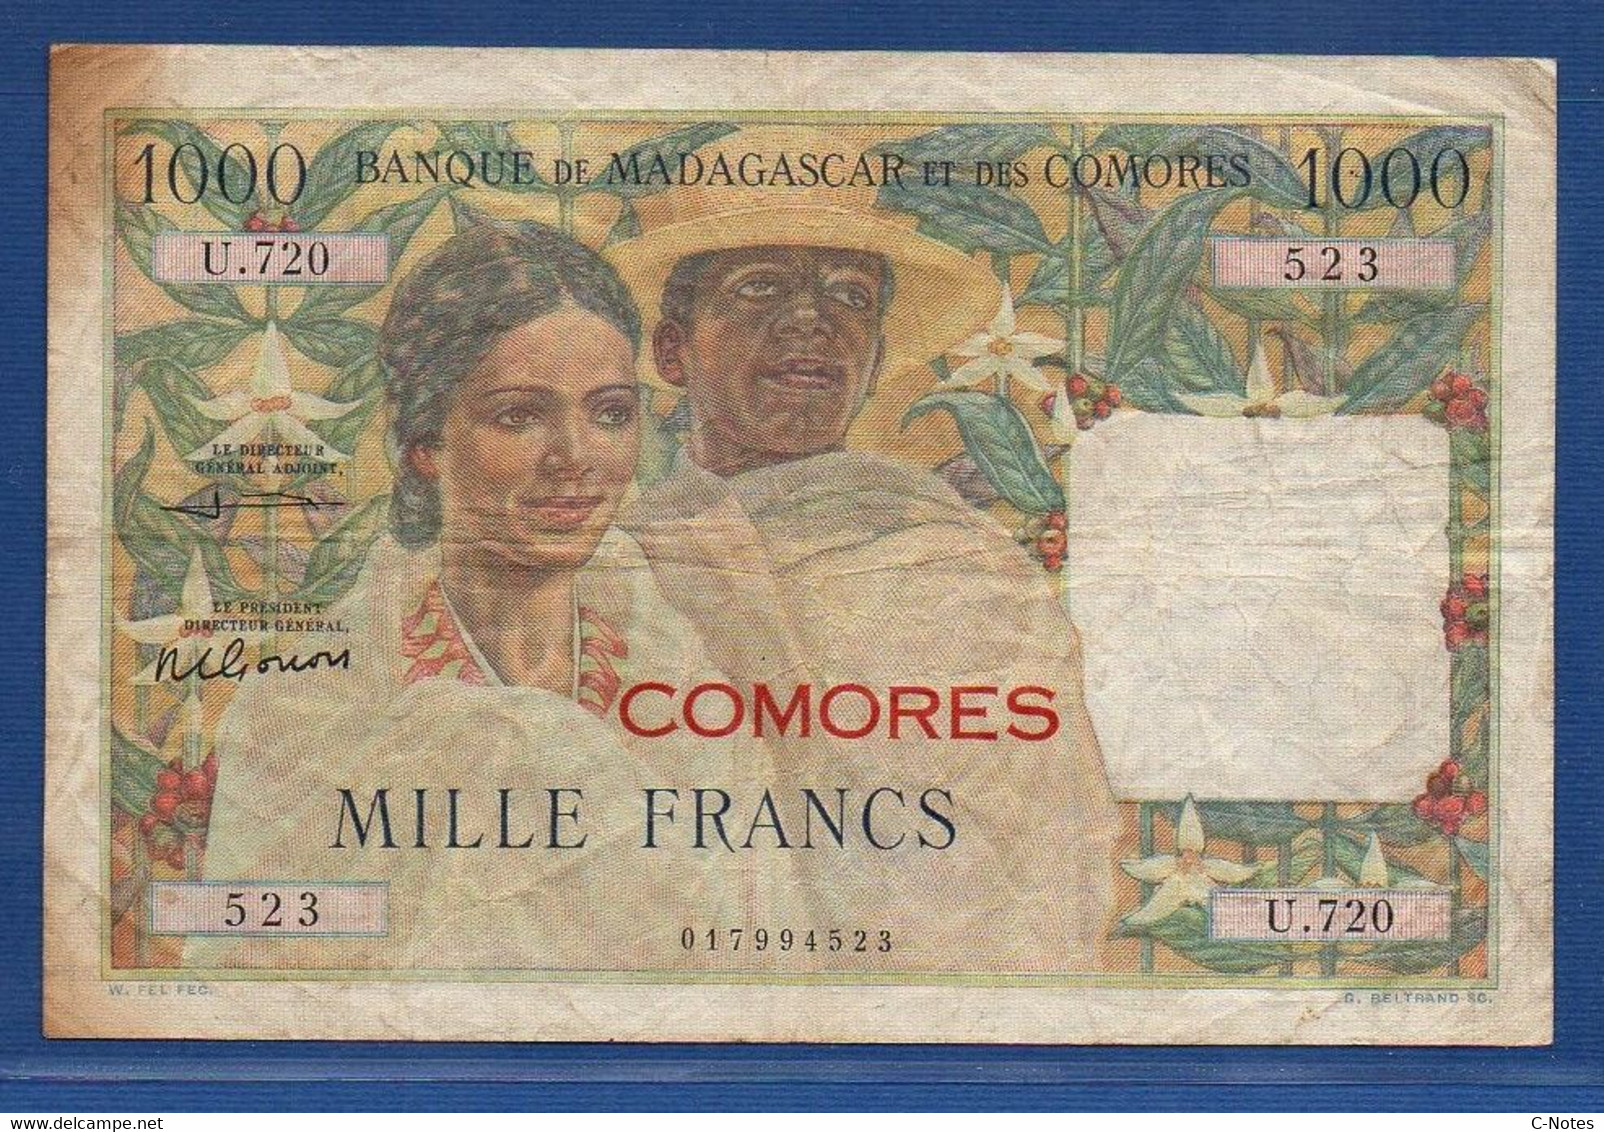 COMOROS - P. 5b2 – 1000 Francs 1963 Circulated / F+, Serie U.720 523 - Comores